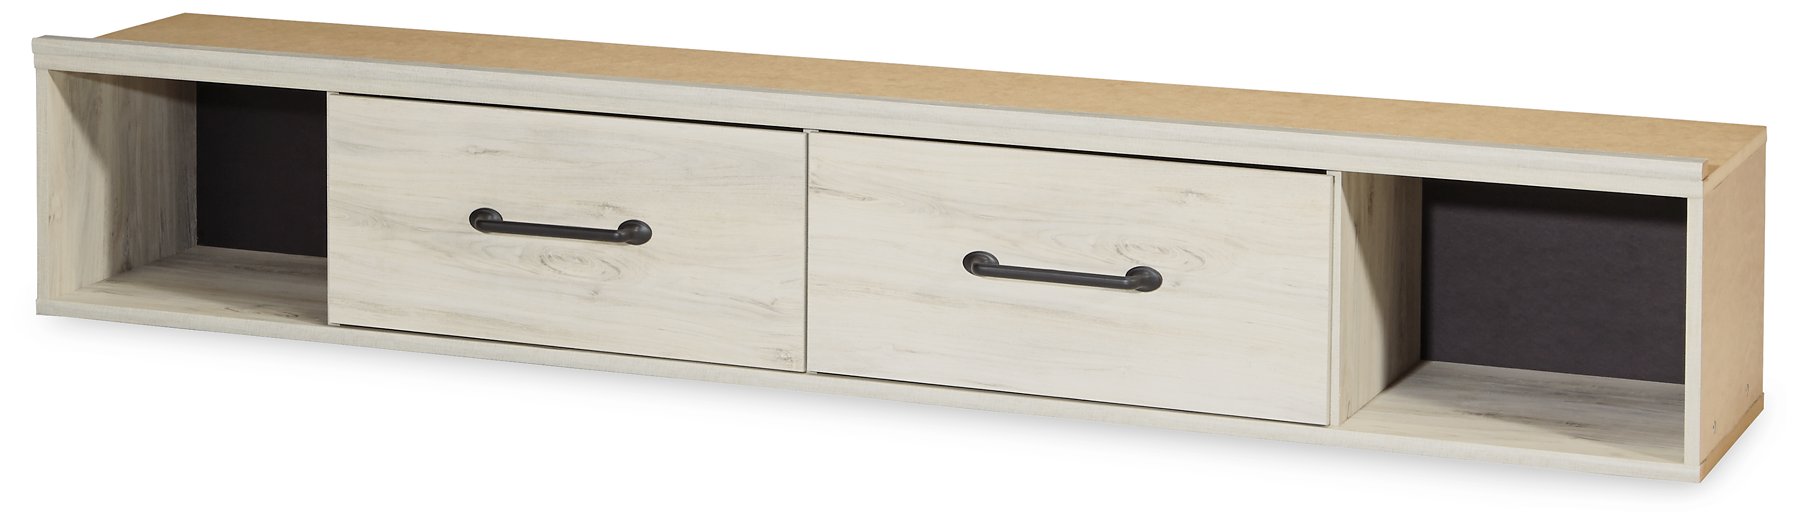 Cambeck Upholstered Panel Storage Bed - Ogle Furniture (TN)